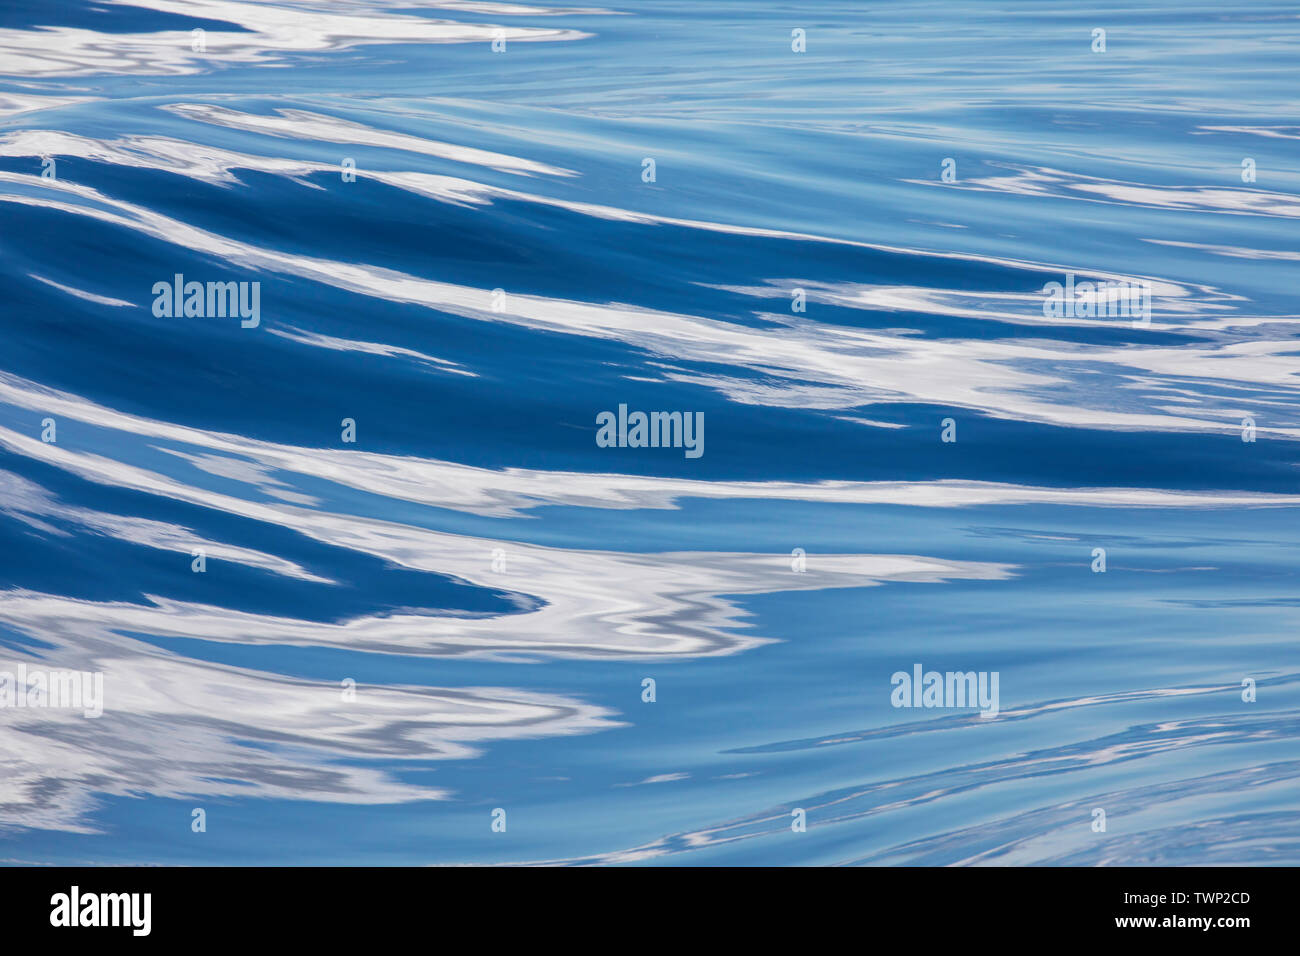 Dies ist ein ruhiger Tag am Pazifischen Ozean mit blauem Himmel und Wolken reflektiert dieses abstrakte Bild zu machen. Stockfoto